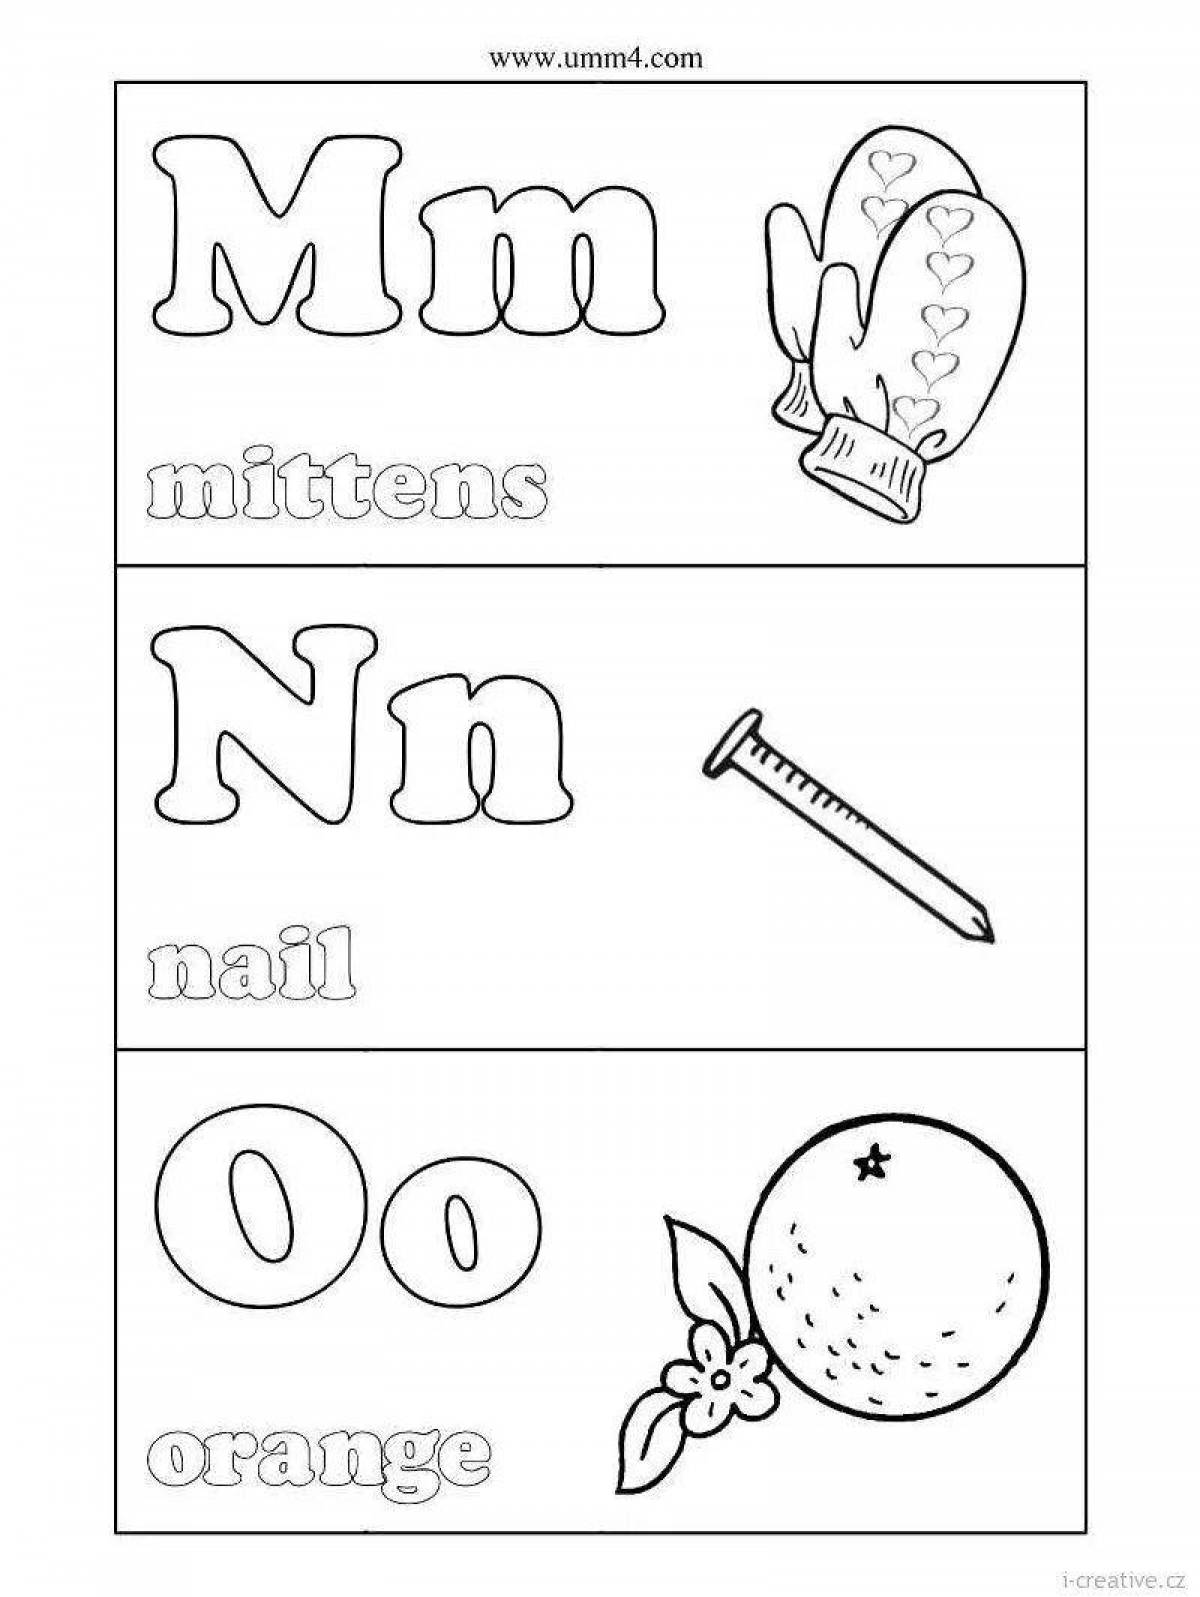 Fun coloring english alphabet